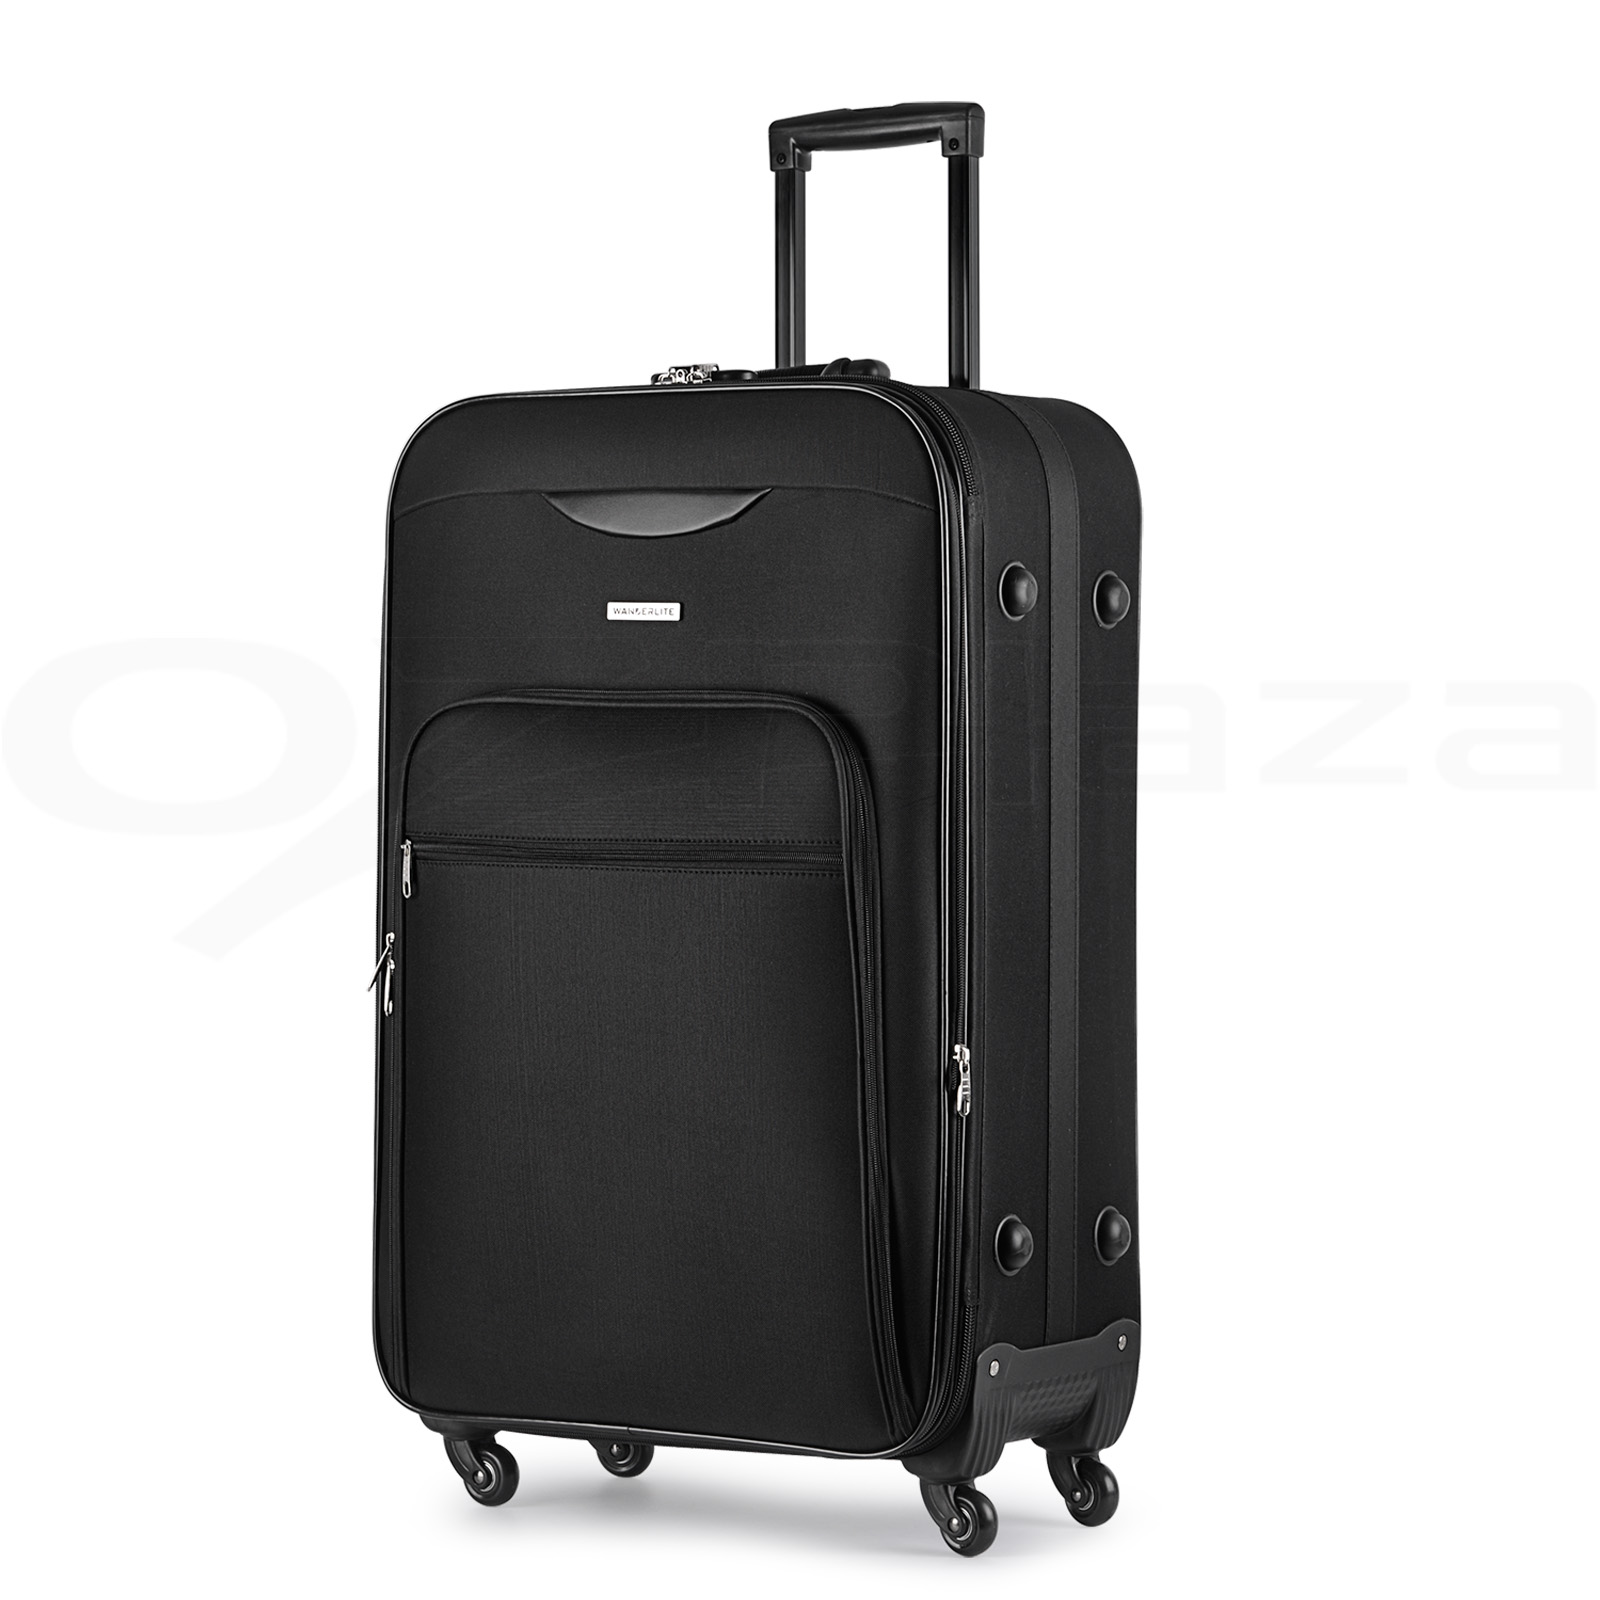 Luggage Suitcase Trolley Set TSA Carry On Bag Soft Case Lightweight Aluminum | eBay